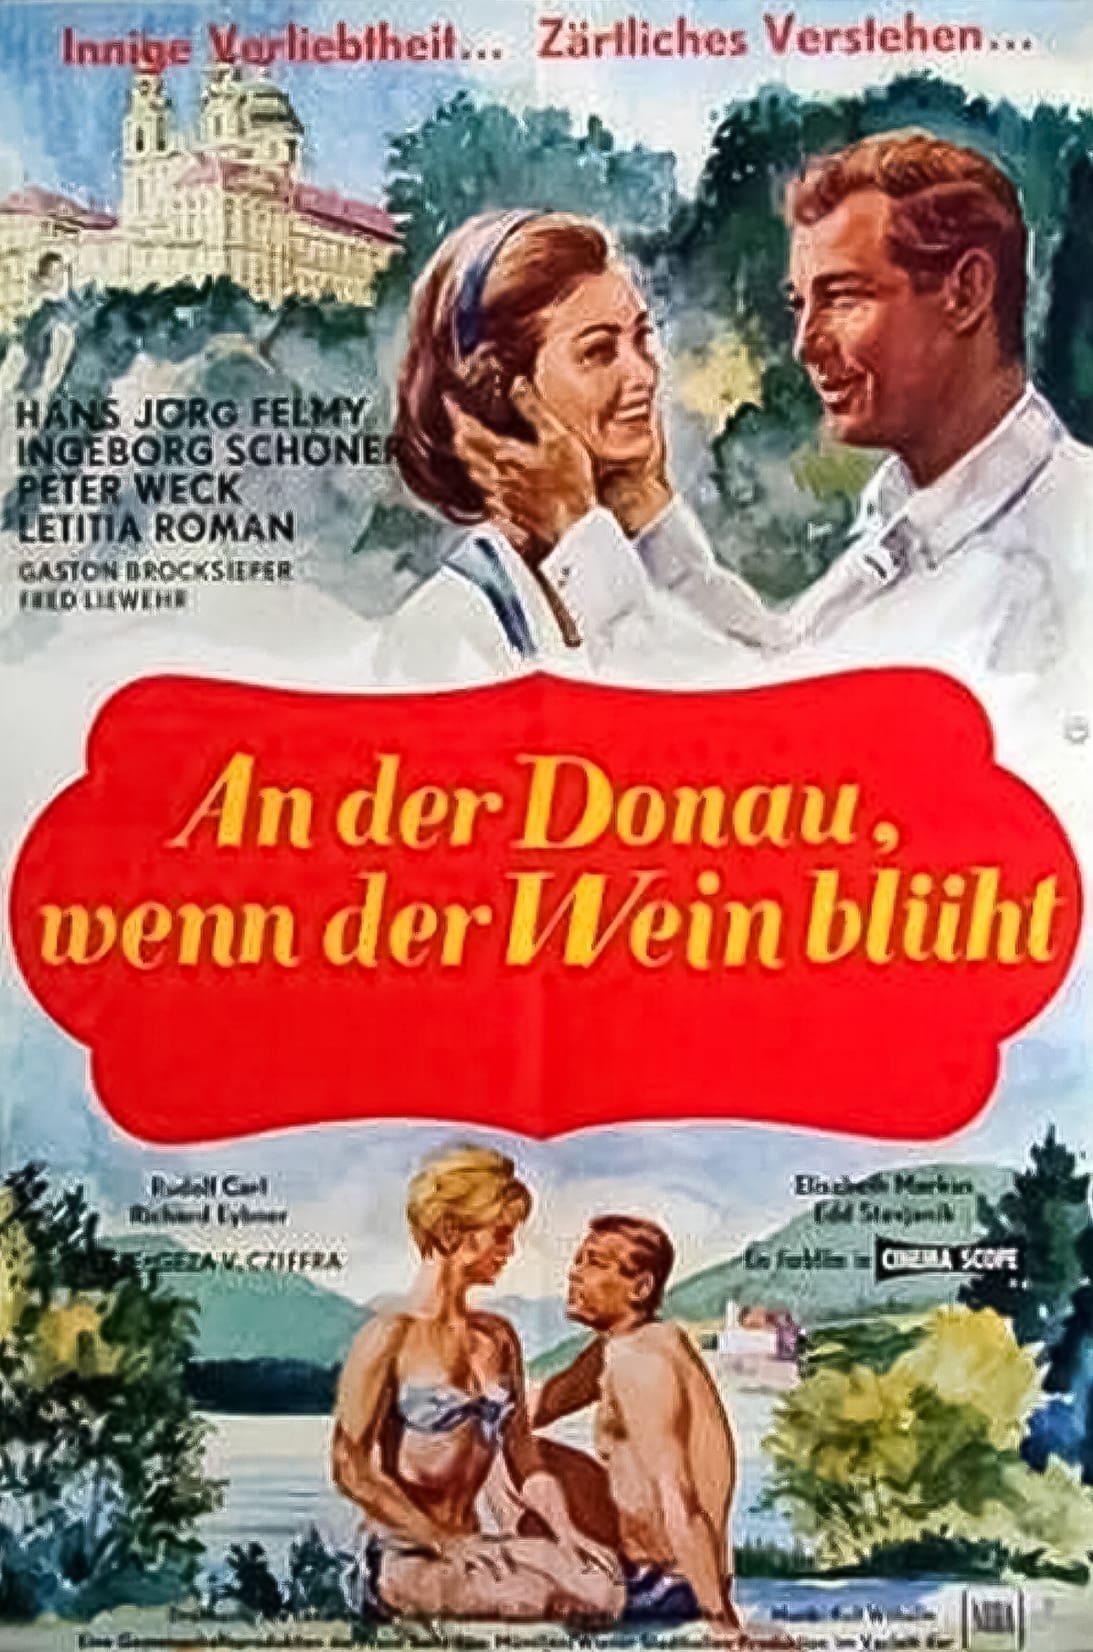 An der Donau, wenn der Wein blüht (1965)